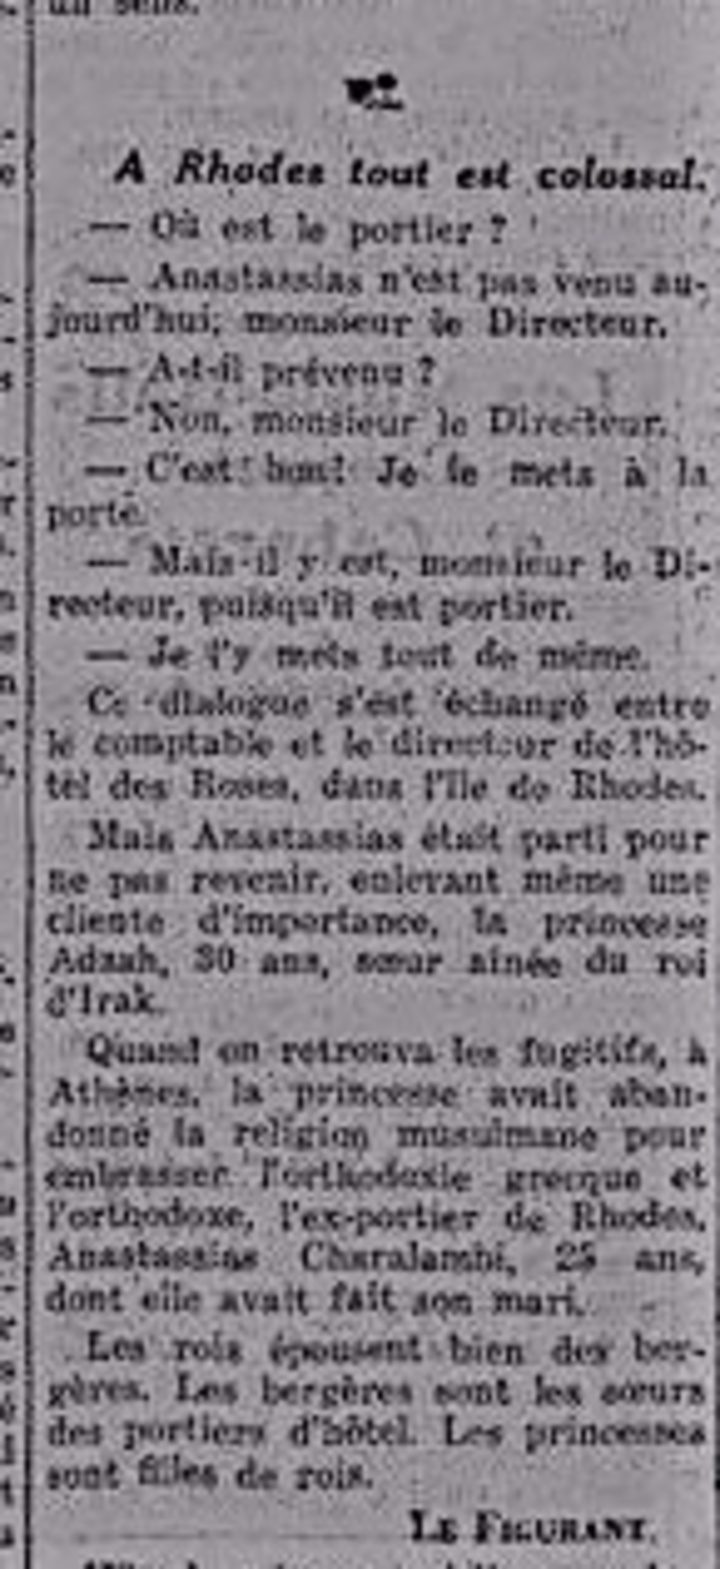 Σχόλιο γαλλικού περιοδικού ότι στη Ρόδο τα πάντα είναι Κολοσσαία, αναφερόμενο στο ειδύλλιο Τάσου και πριγκίπισσας 